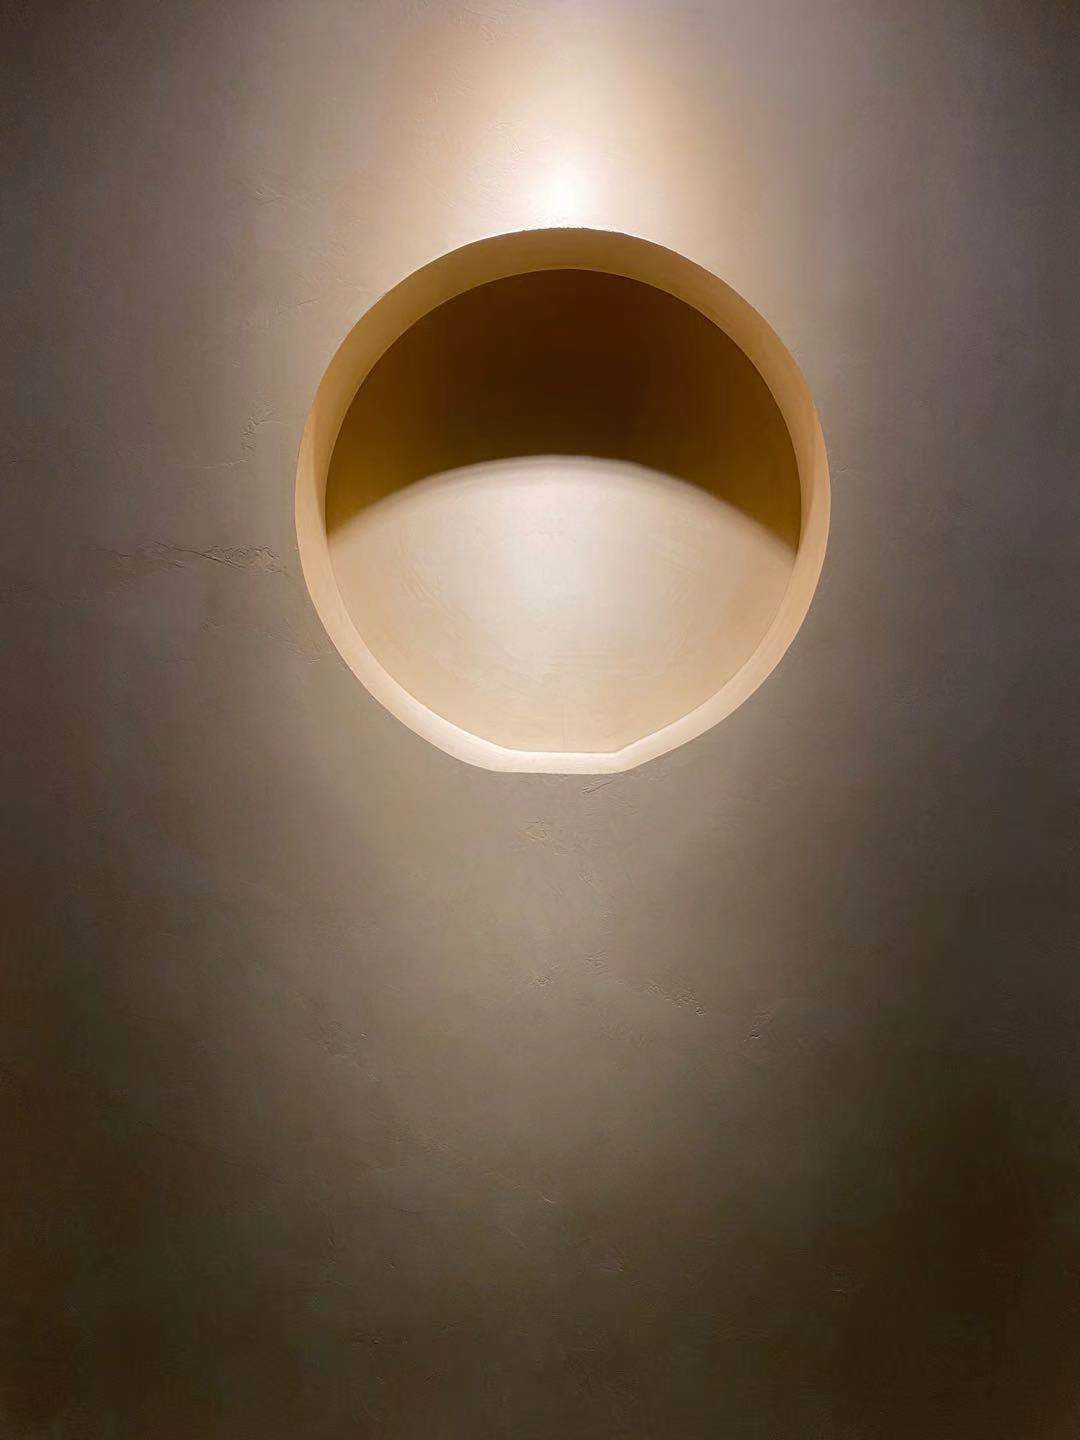 Mikrozement an einer Wand eines minimalistischen Hauses mit einer Beleuchtung, die die Beschichtung betont